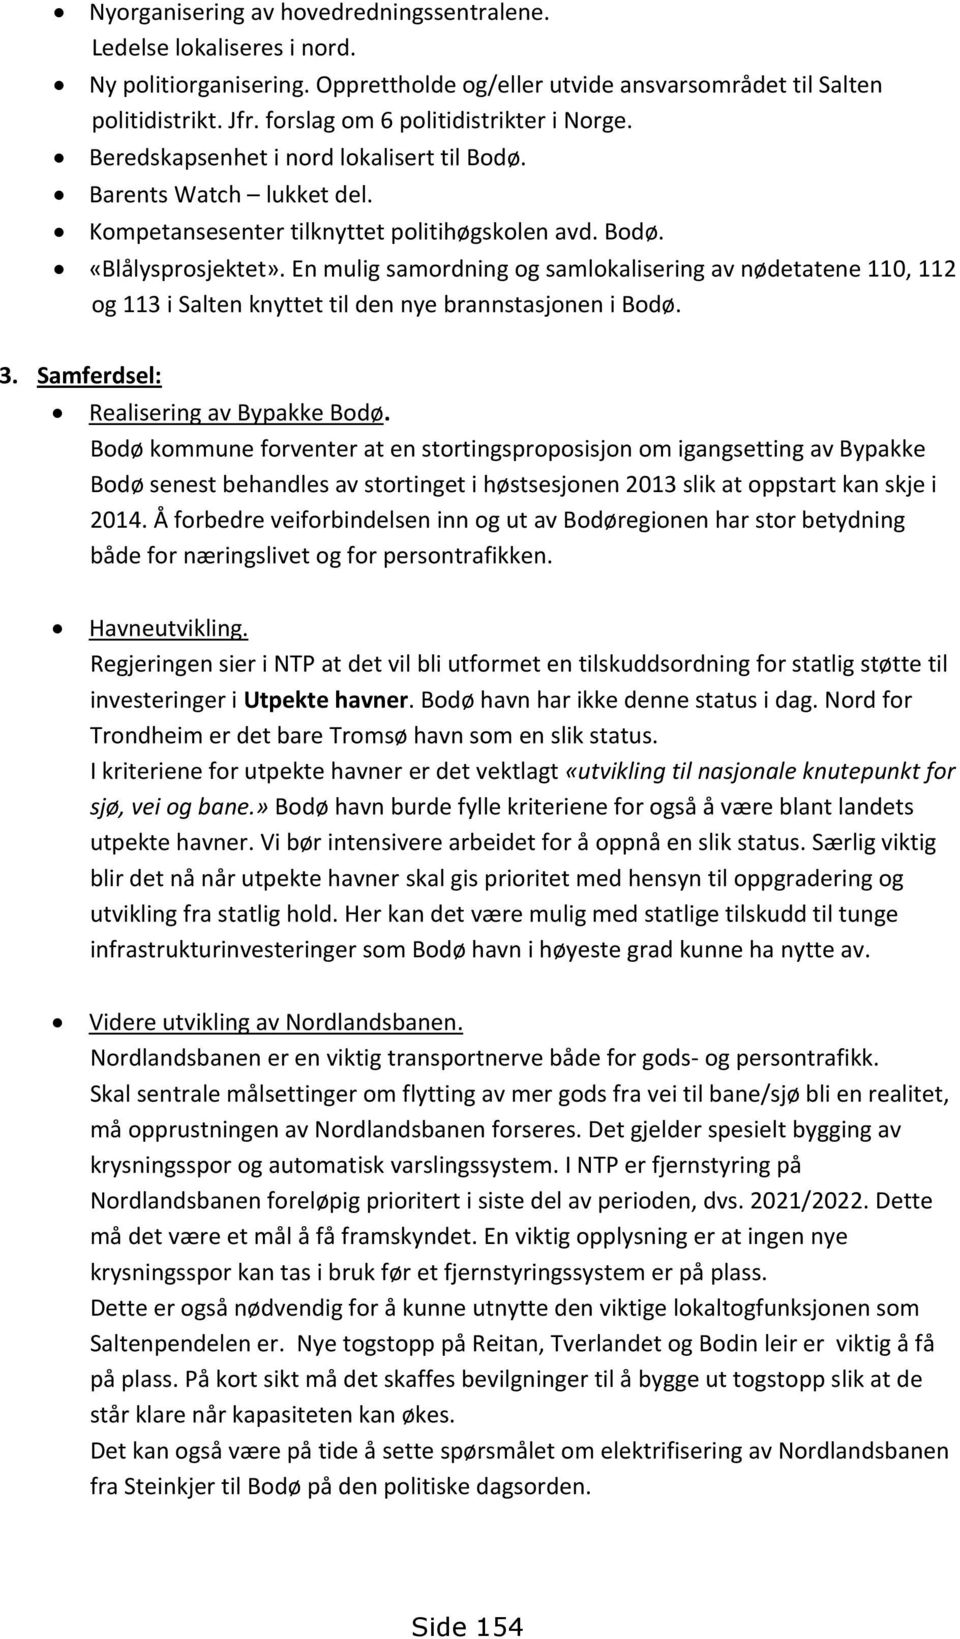 En mulig samordning og samlokalisering av nødetatene 110, 112 og 113 i Salten knyttet til den nye brannstasjonen i Bodø. 3. Samferdsel: Realisering av Bypakke Bodø.